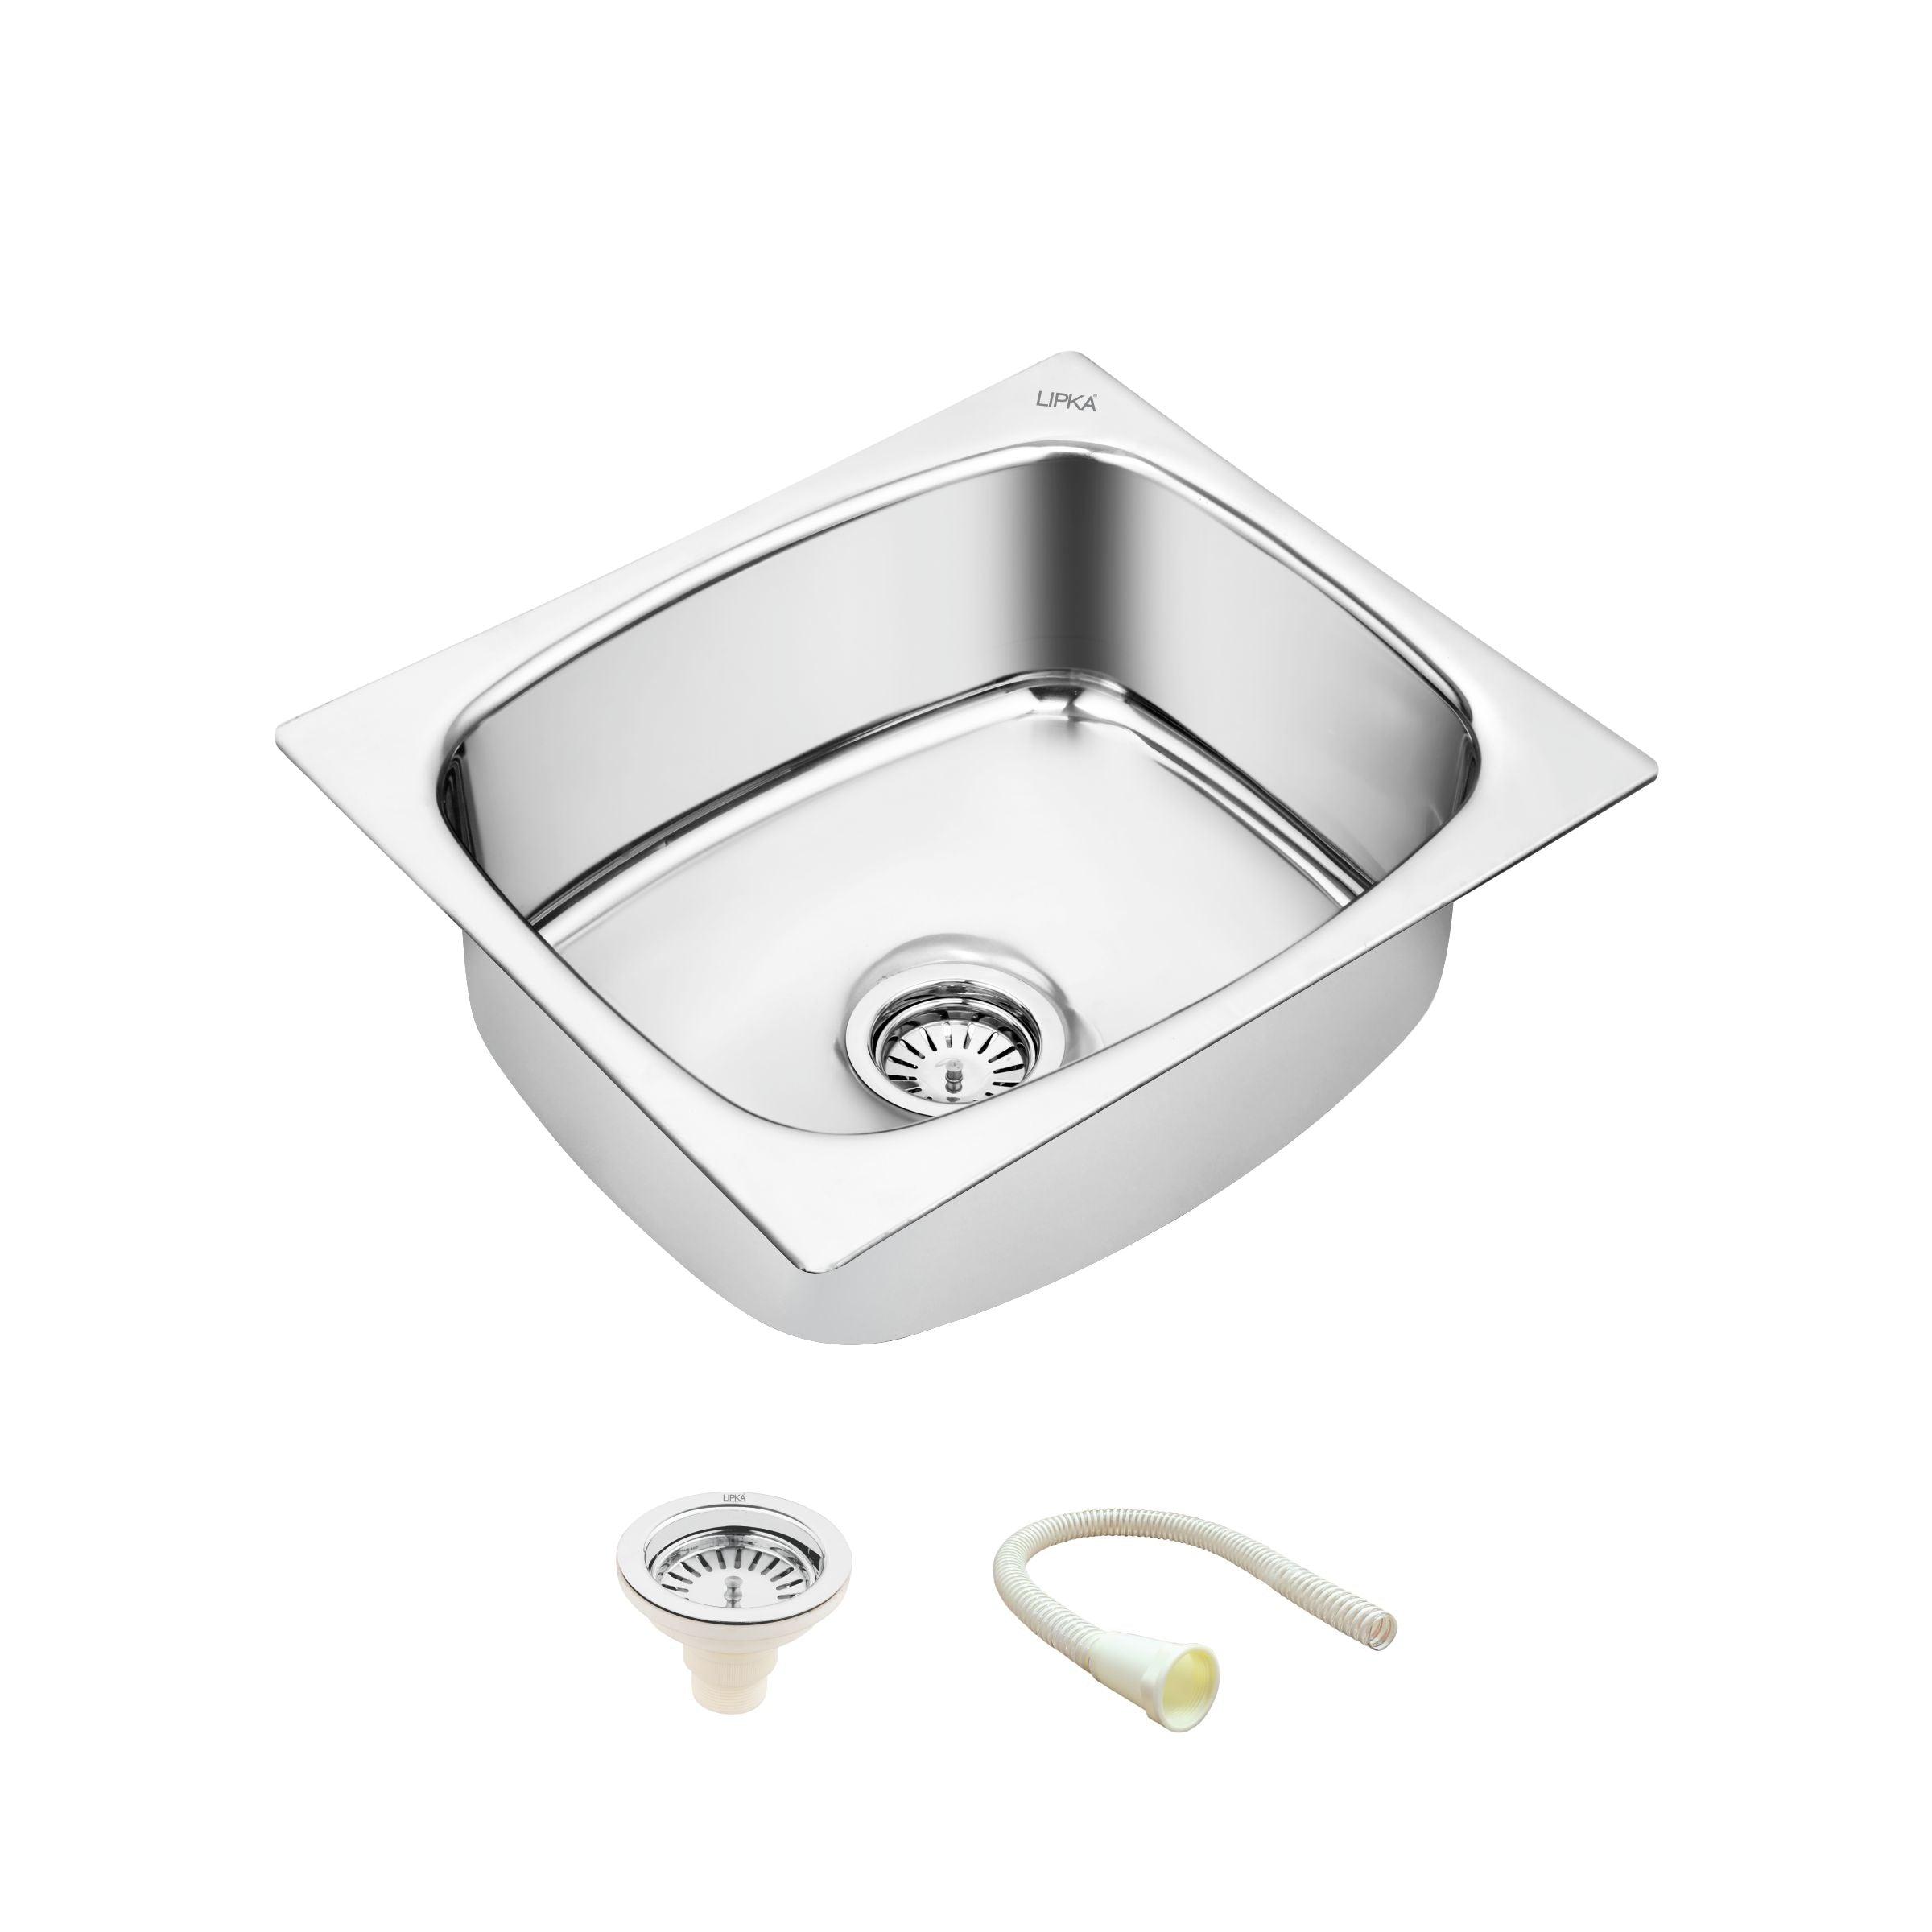 Round Single Bowl Kitchen Sink (21 x 18 x 8 Inches) - LIPKA - Lipka Home